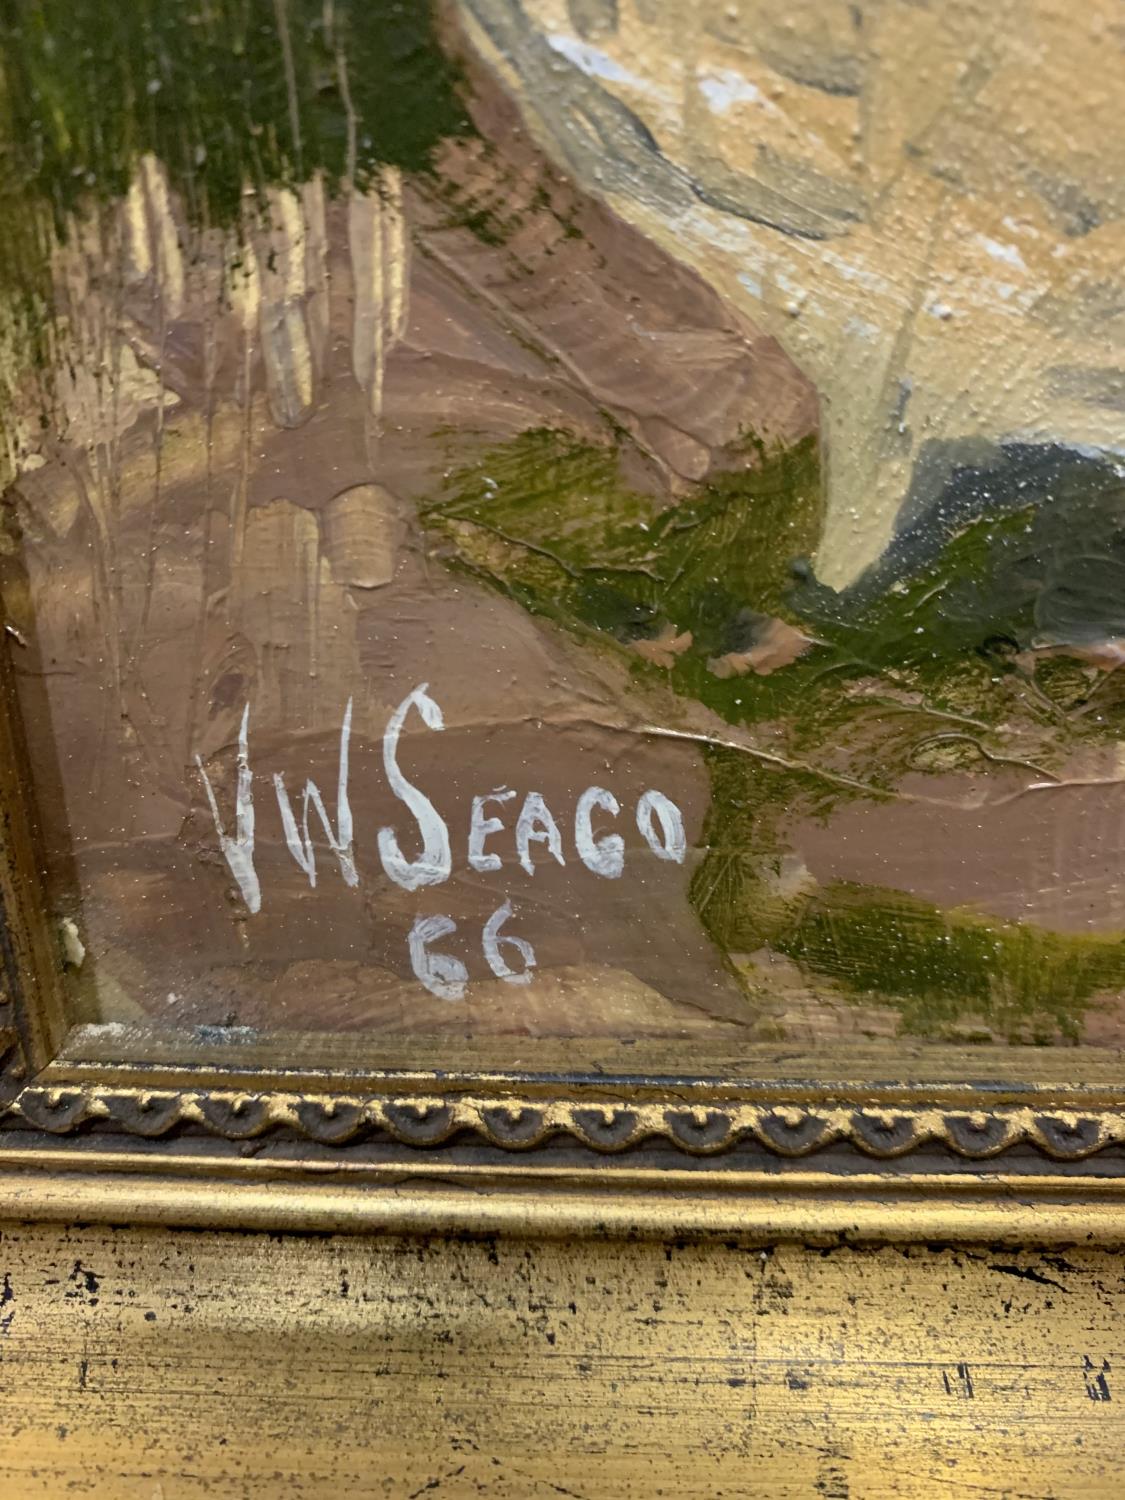 A GILT FRAMED OIL ON BOARD SIGNED V W SEAGO '66 - Image 3 of 4